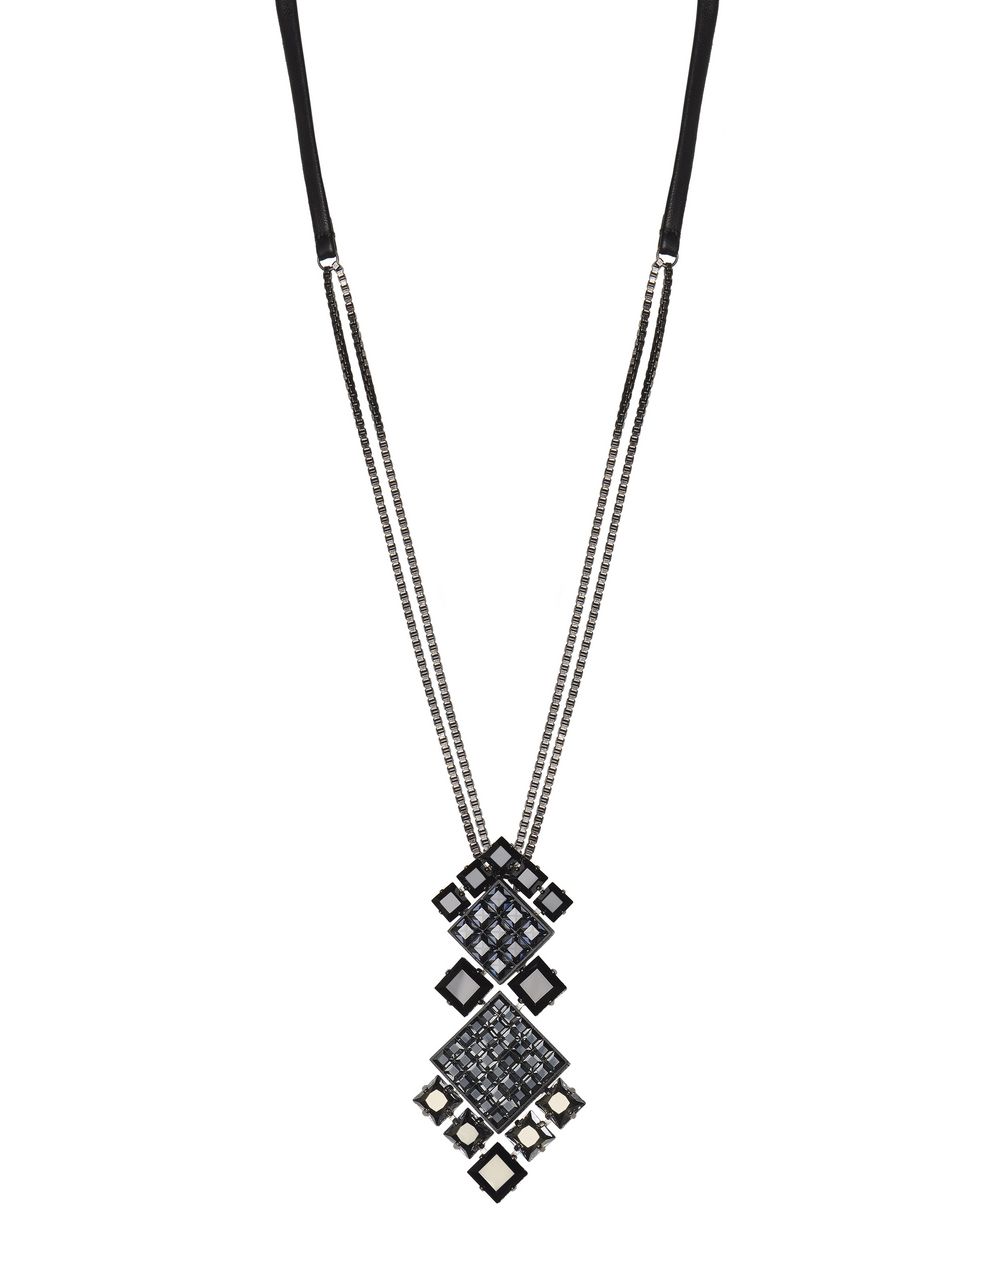 Collier Diamond Square composée de diamants en pierres Swarovski de couleur noireLanvin – Prix €995